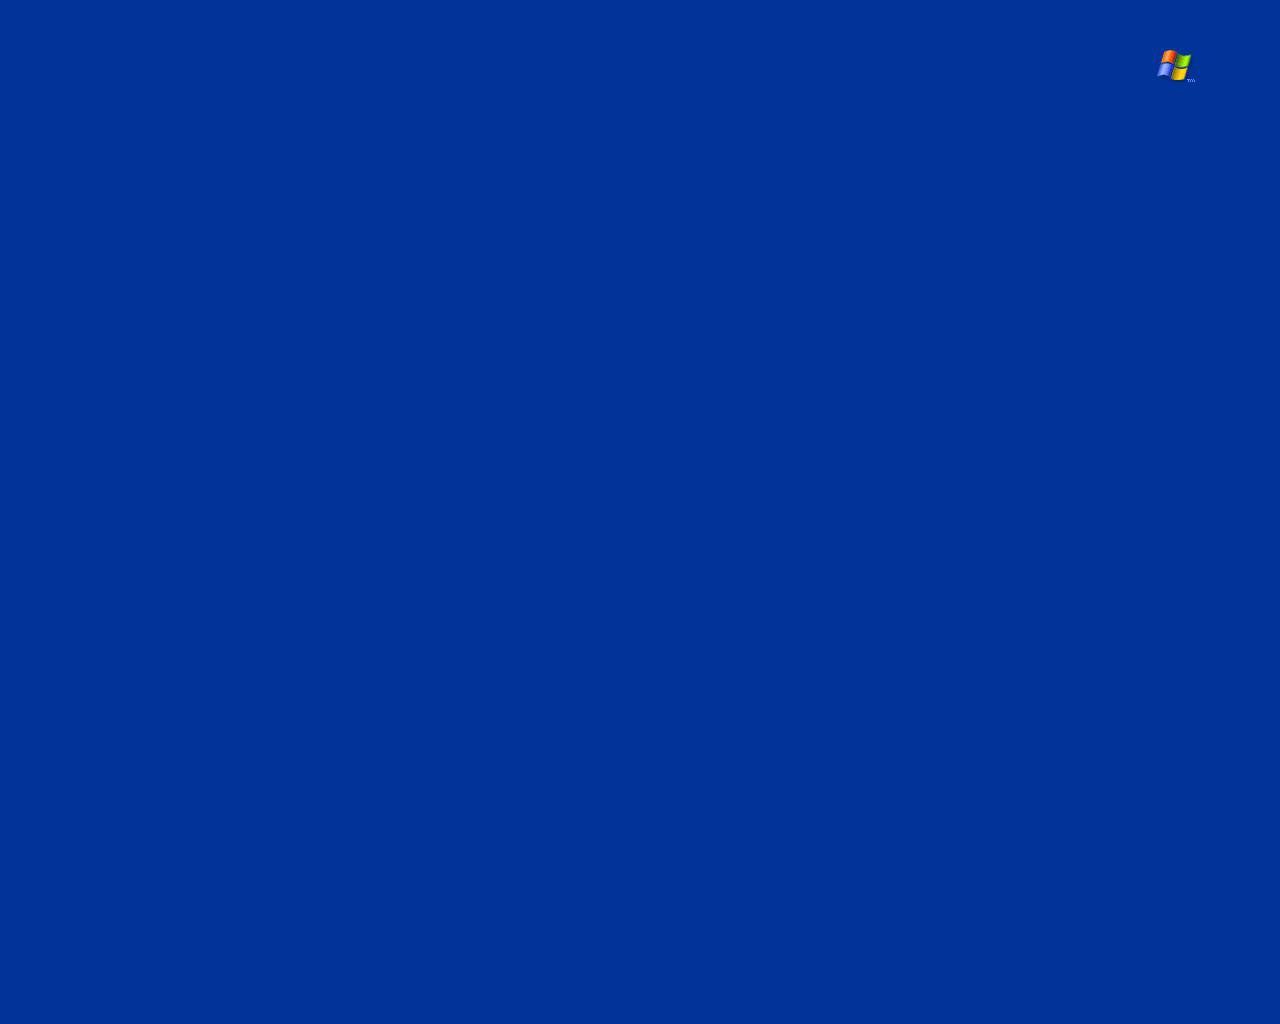 Windows XP Dark Blue Wallpaper by p0land on DeviantArt